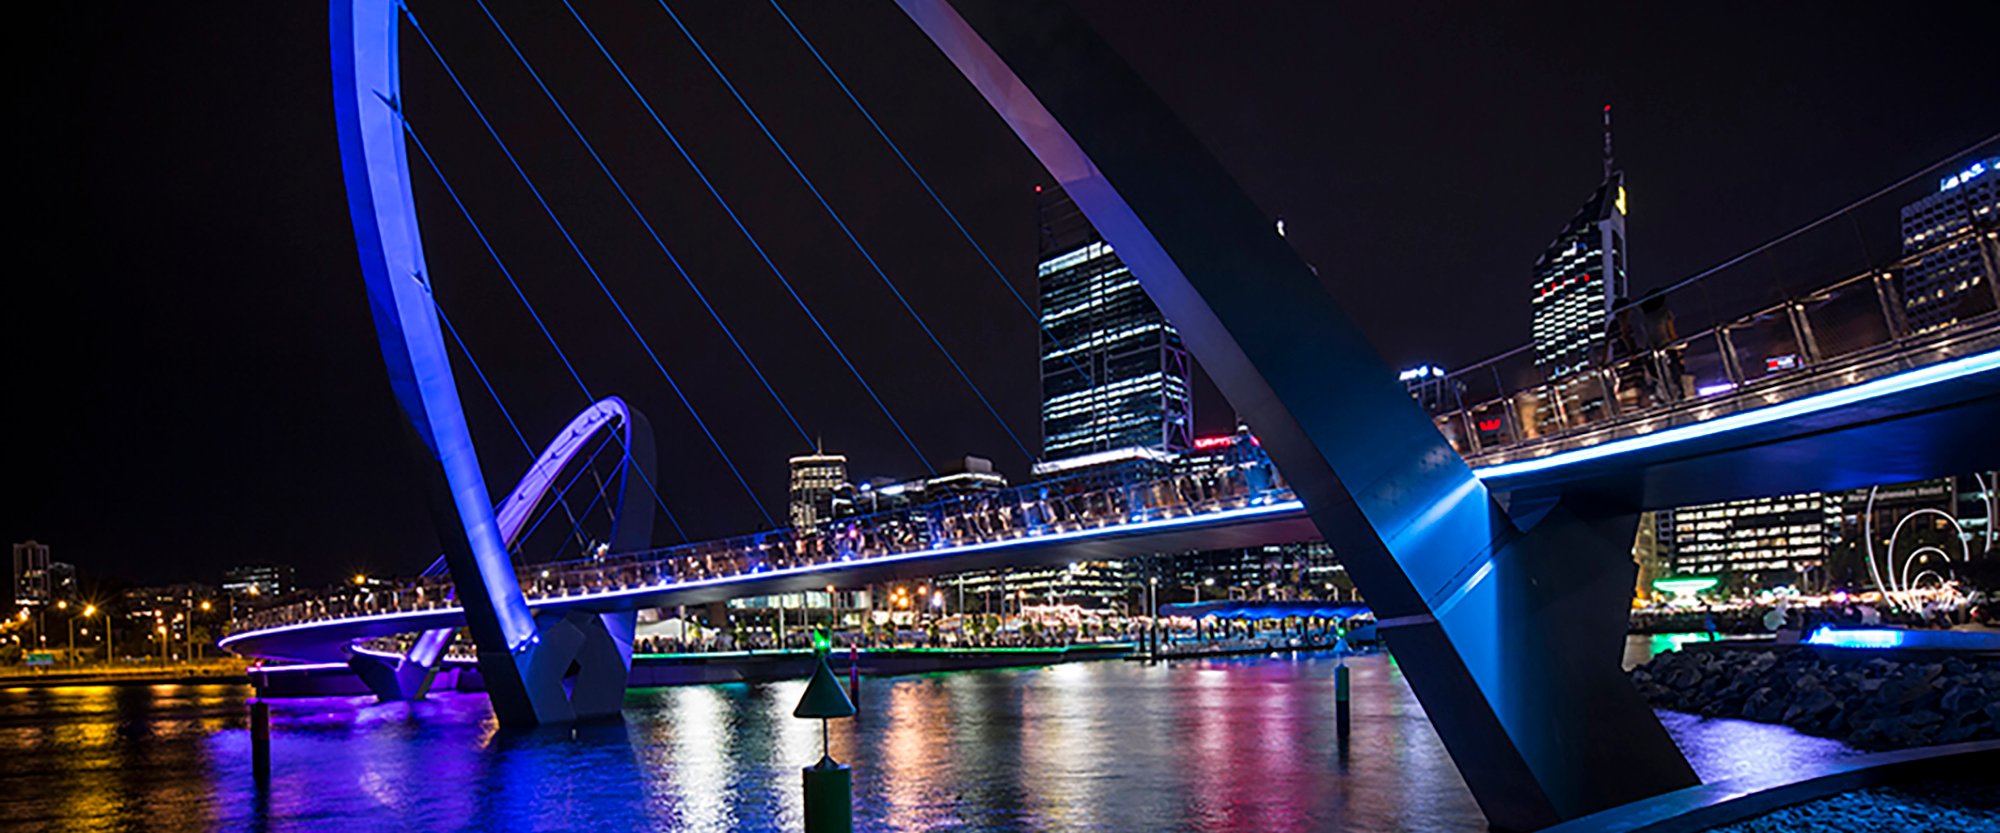 Elizabeth Quay bridge at night time